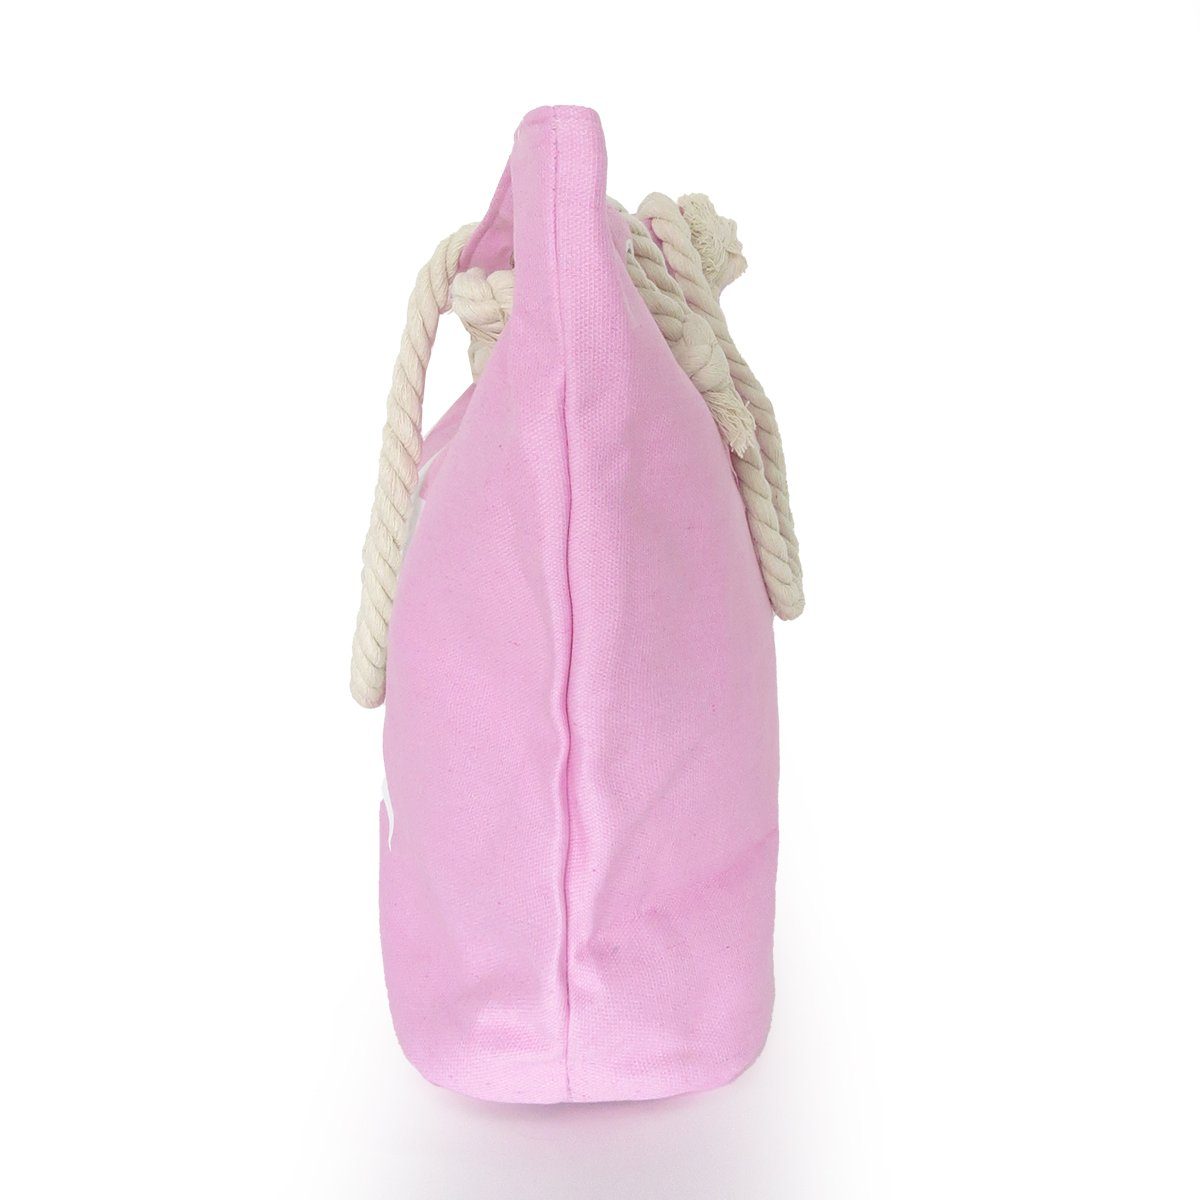 Sonia Originelli Reißverschluss rosa Shopper, Strandtasche kleine Innentasche Umhängetasche mit Sternaufdruck mit uni Seilkordeln